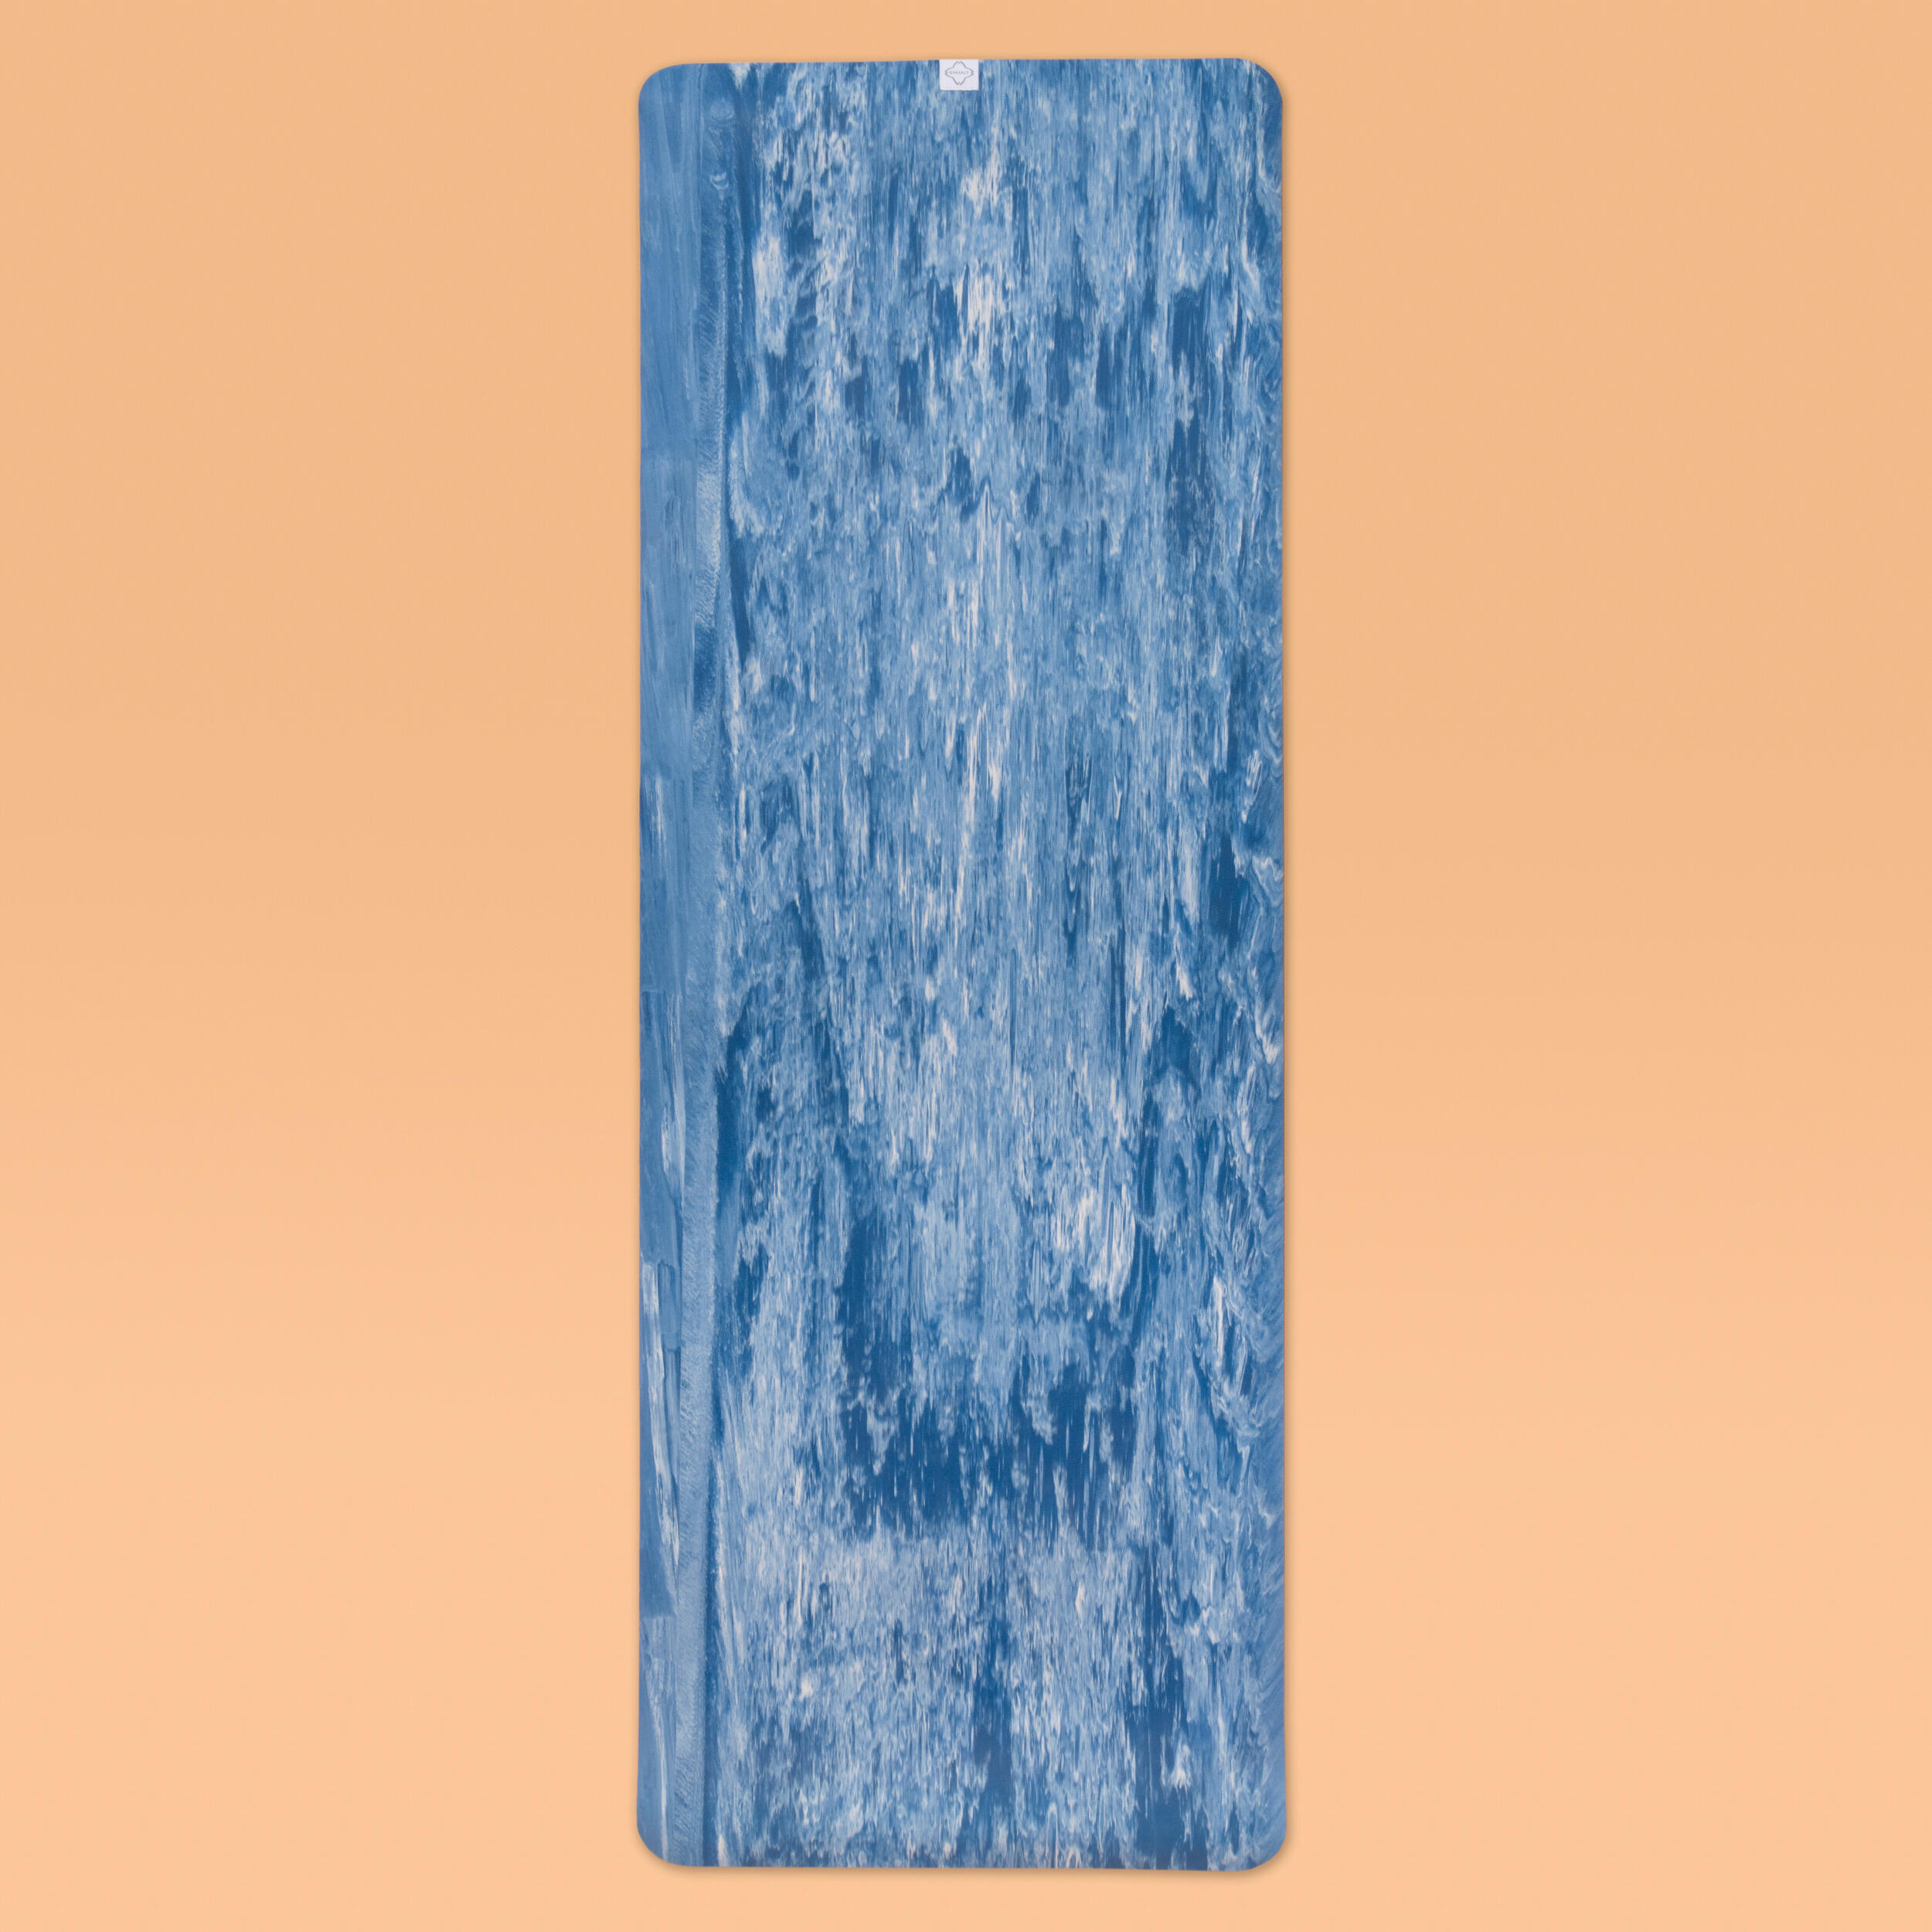 Saltea Yoga Grip 185 cm x 65 cm x 5 mm Albastru